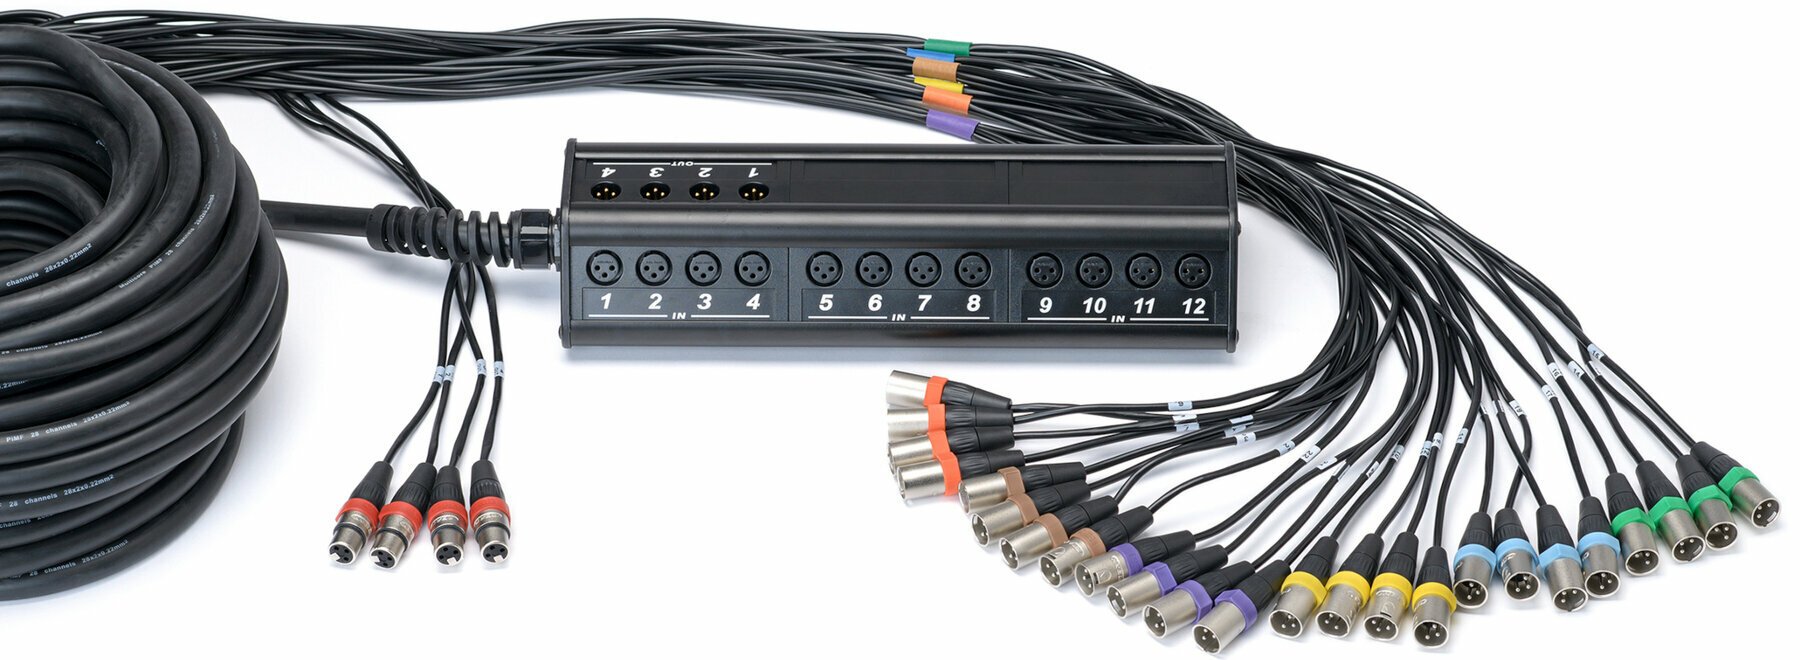 Cablu complet multicolor Cordial CYB 24-4 C 30 m